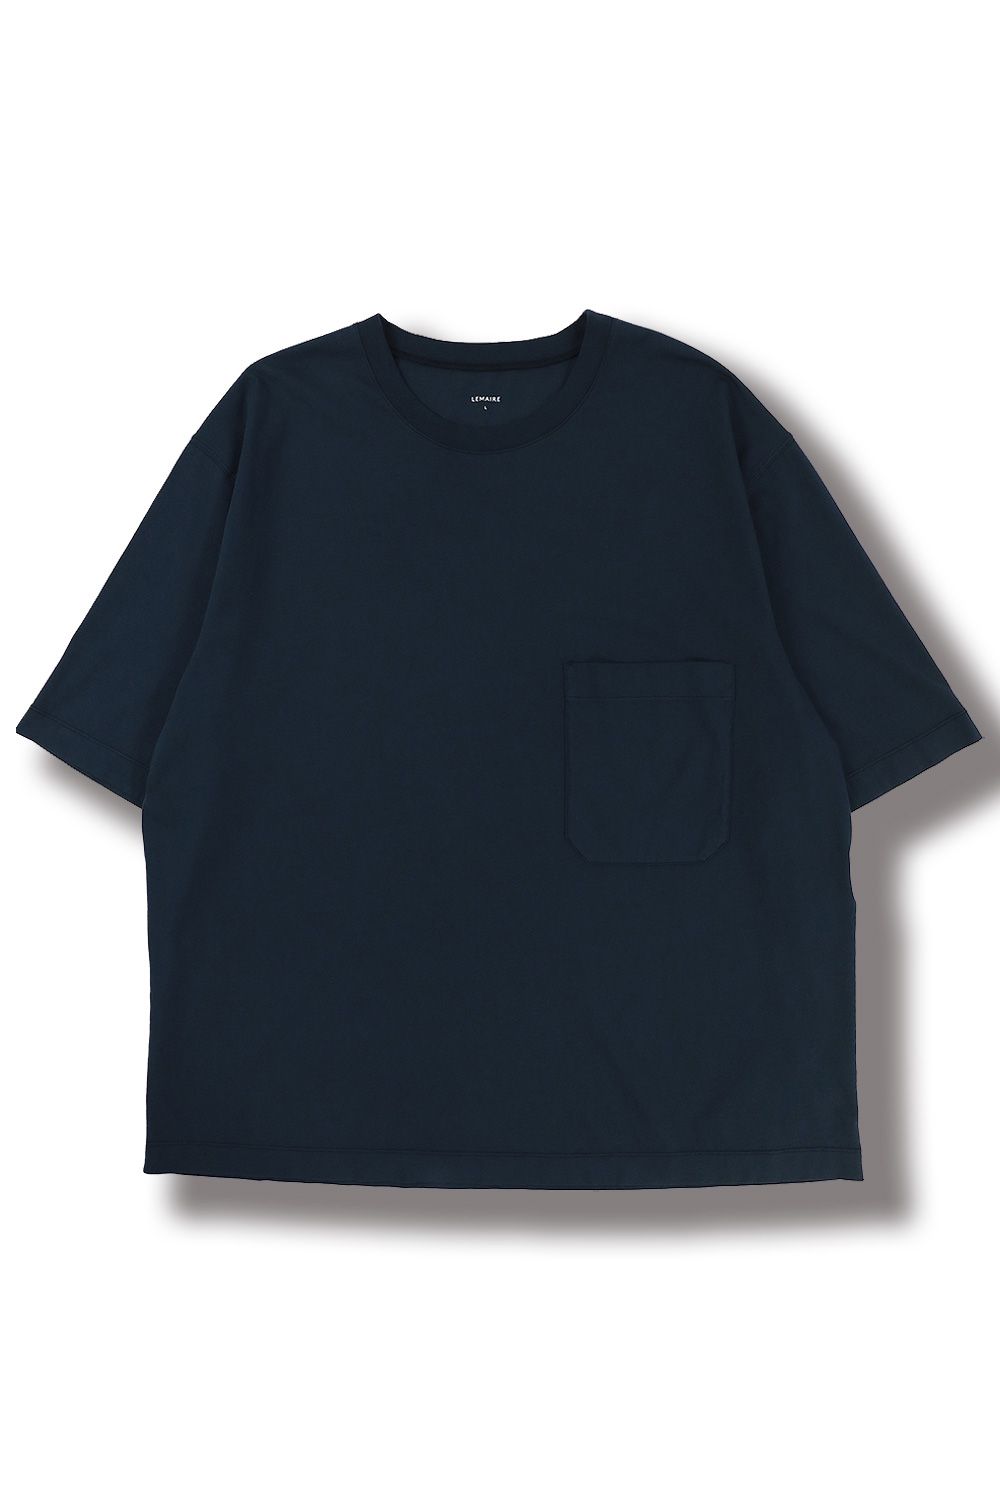 送料無料】 エディター メンズ Tシャツ トップス T-shirts Navy blue-